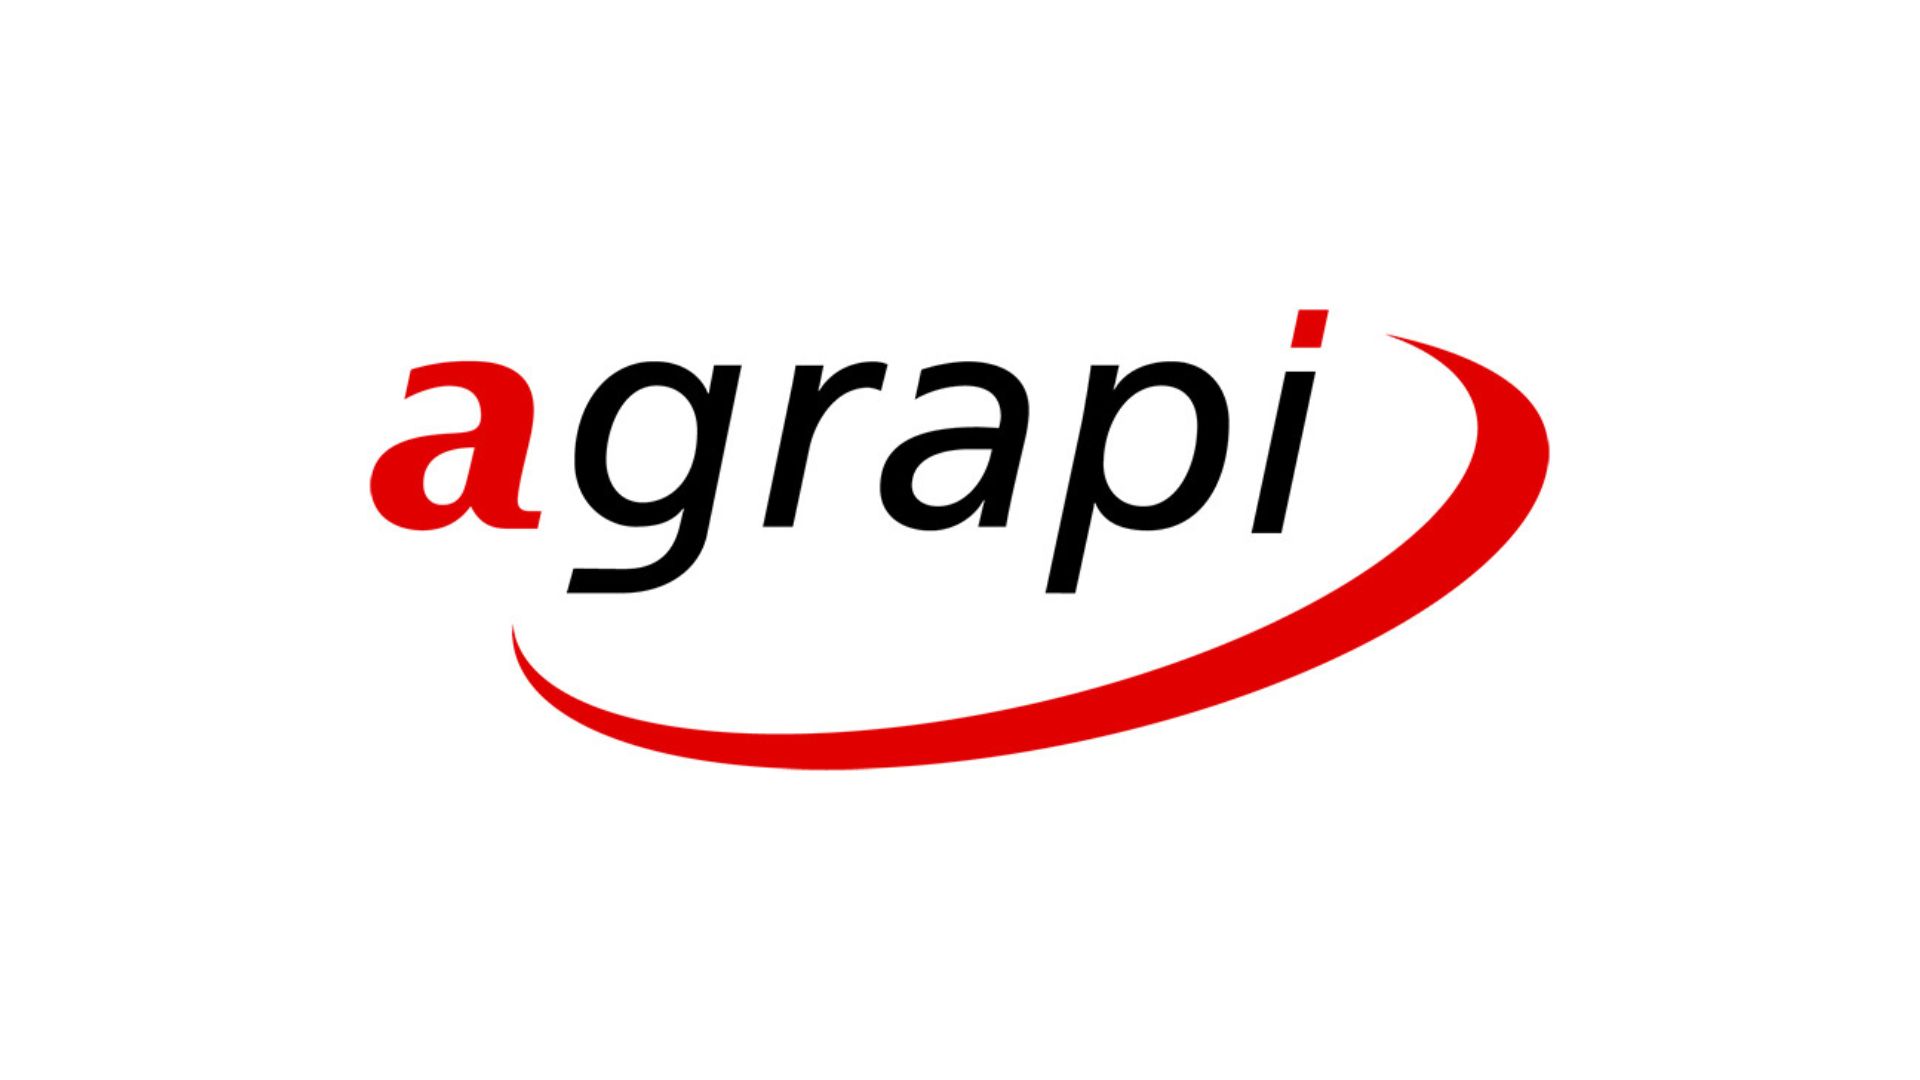 Agrapi_Firmenportr%C3%A4t.jpg